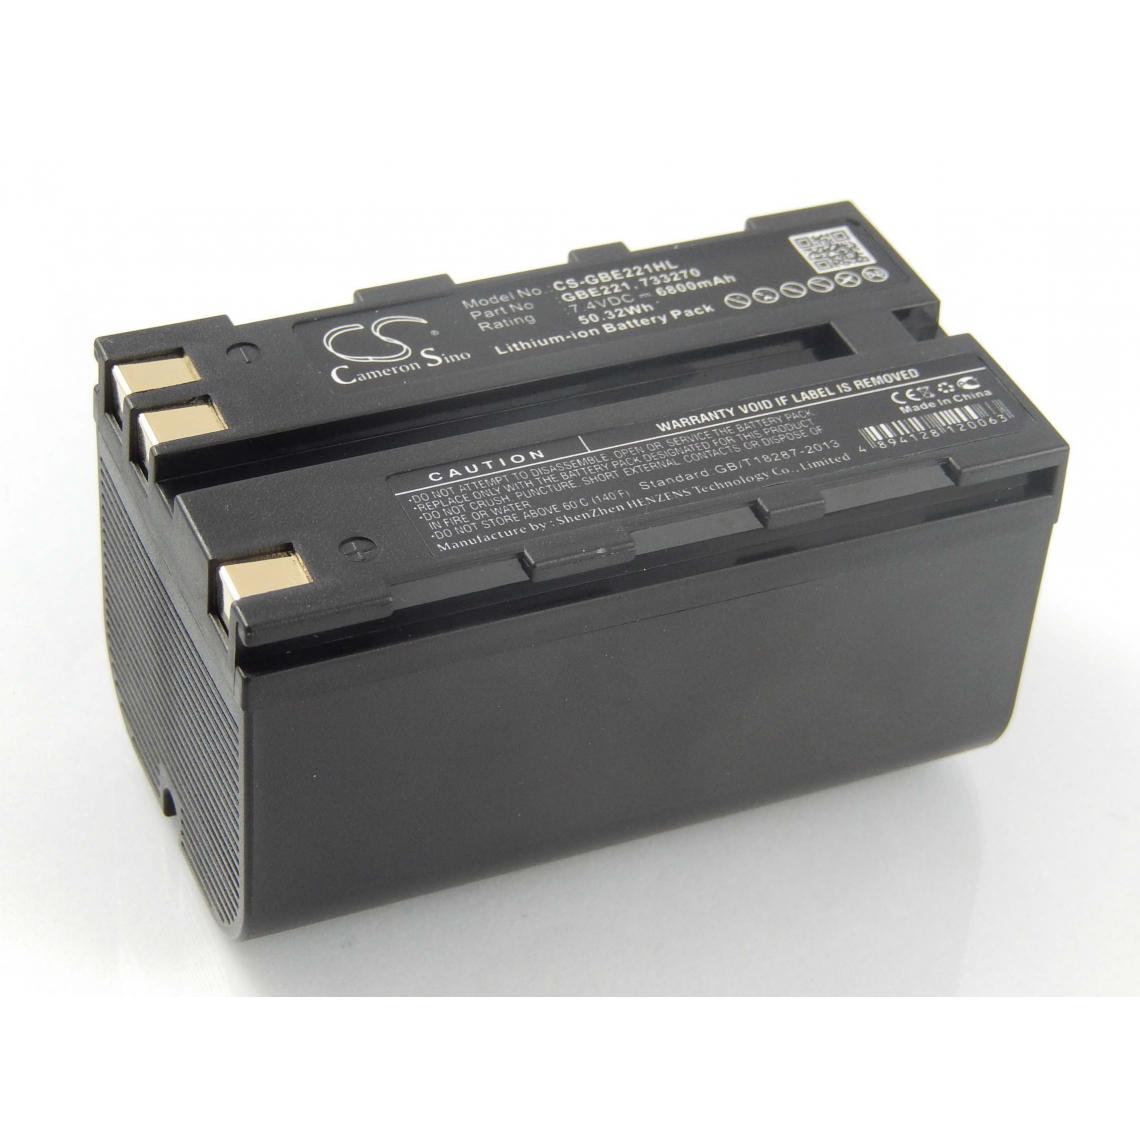 Vhbw - vhbw Batterie compatible avec Leica CS10, CS15, DNA03, DNA10 dispositif de mesure laser, outil de mesure (6800mAh, 7,4V, Li-ion) - Piles rechargeables